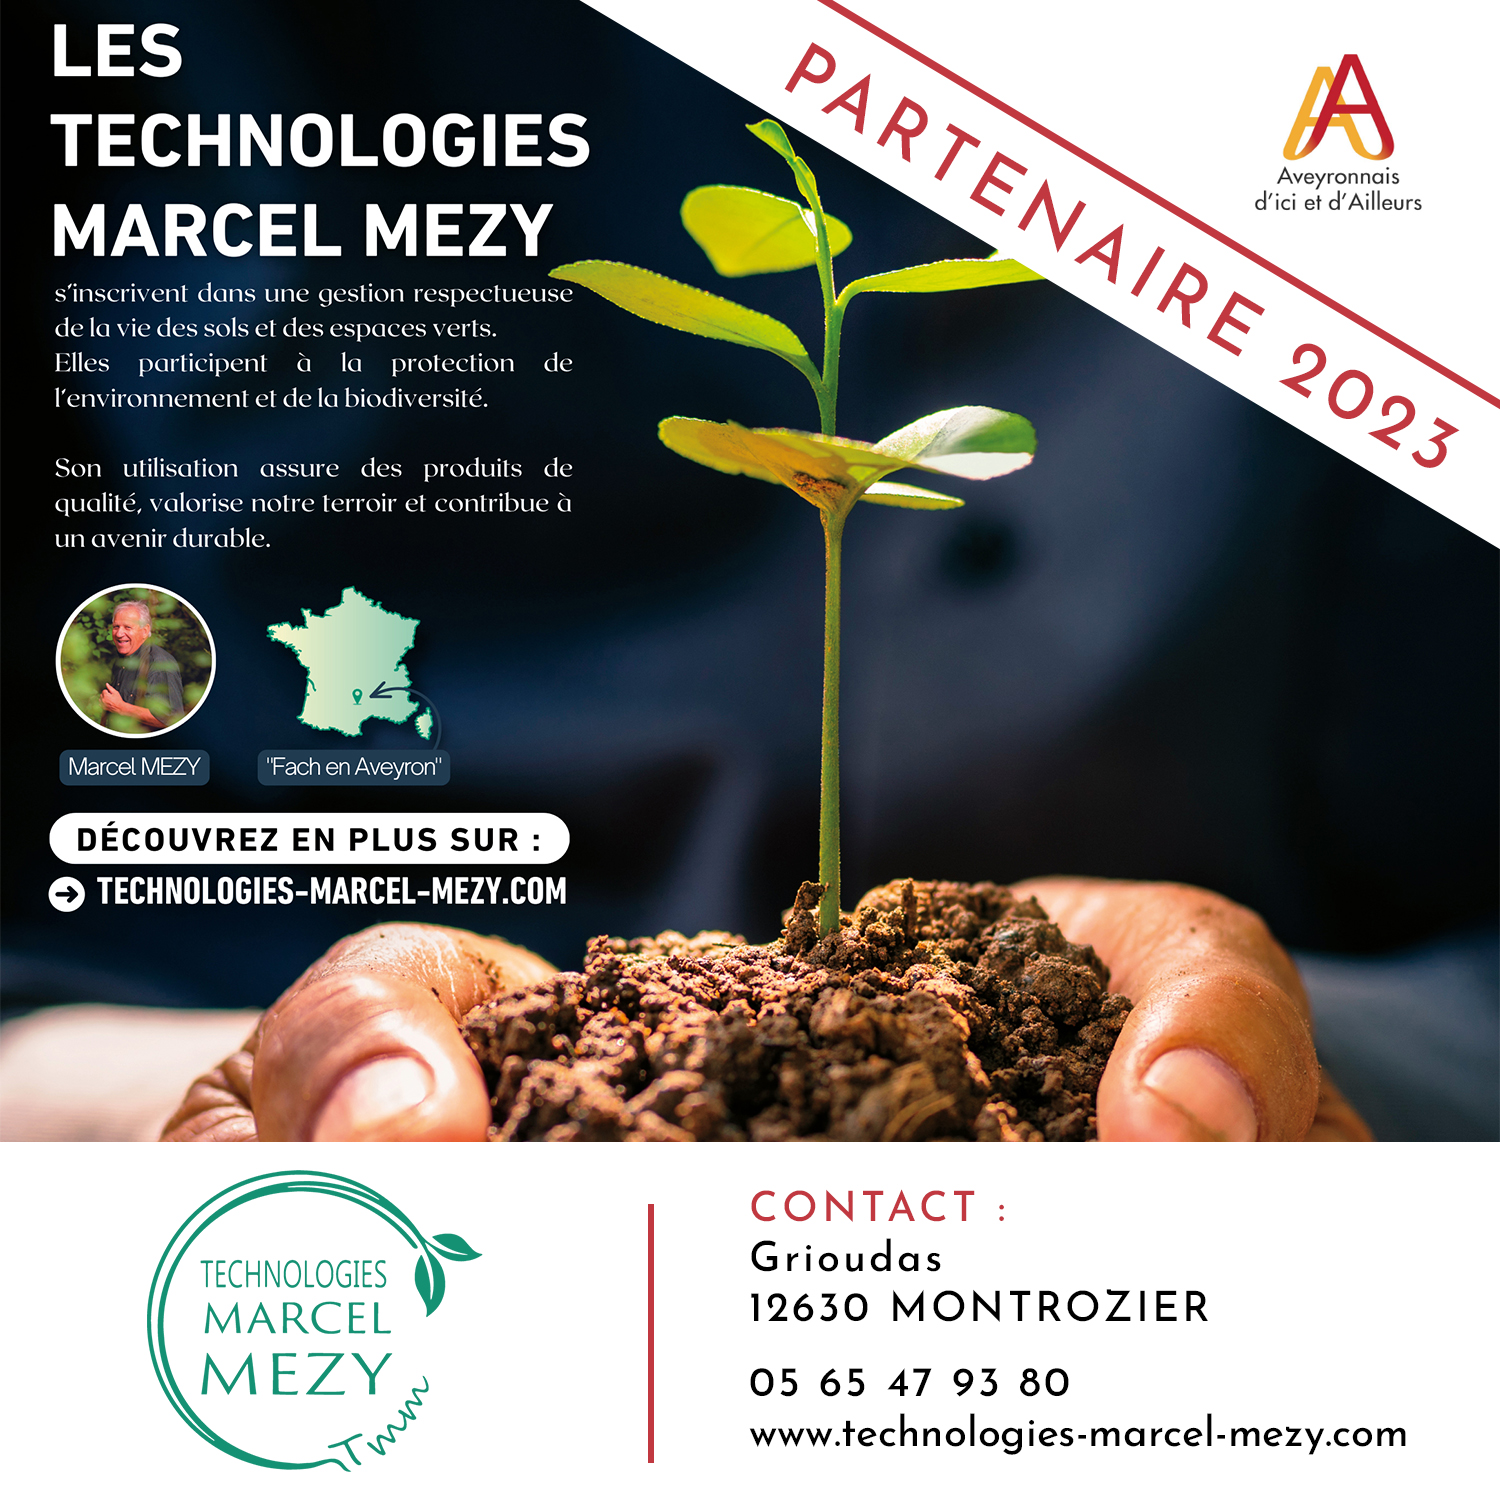 Les Technologies Marcel Mezy | Marché des Pays Aveyron